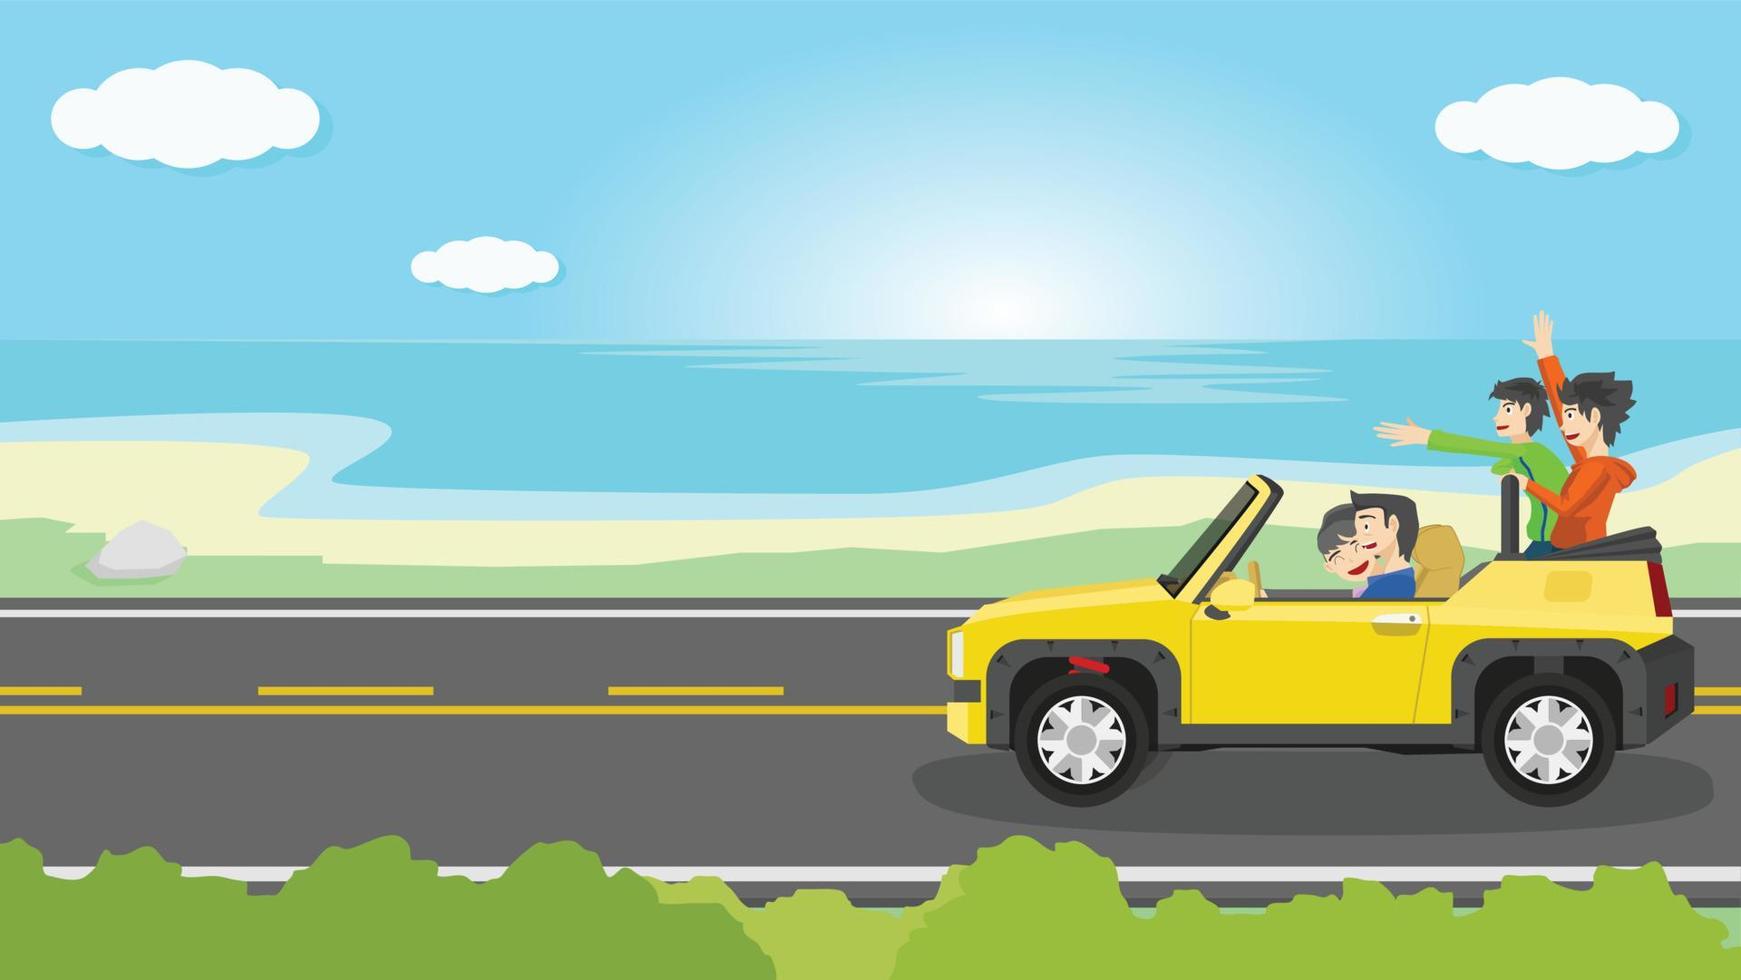 conducir coche color amarillo fuera de la carretera techo abierto en carretera asfaltada. viaje familiar con los padres sentados al frente mientras los niños se sientan atrás con las manos felices. fondo de playa y vasto mar bajo el cielo azul. vector